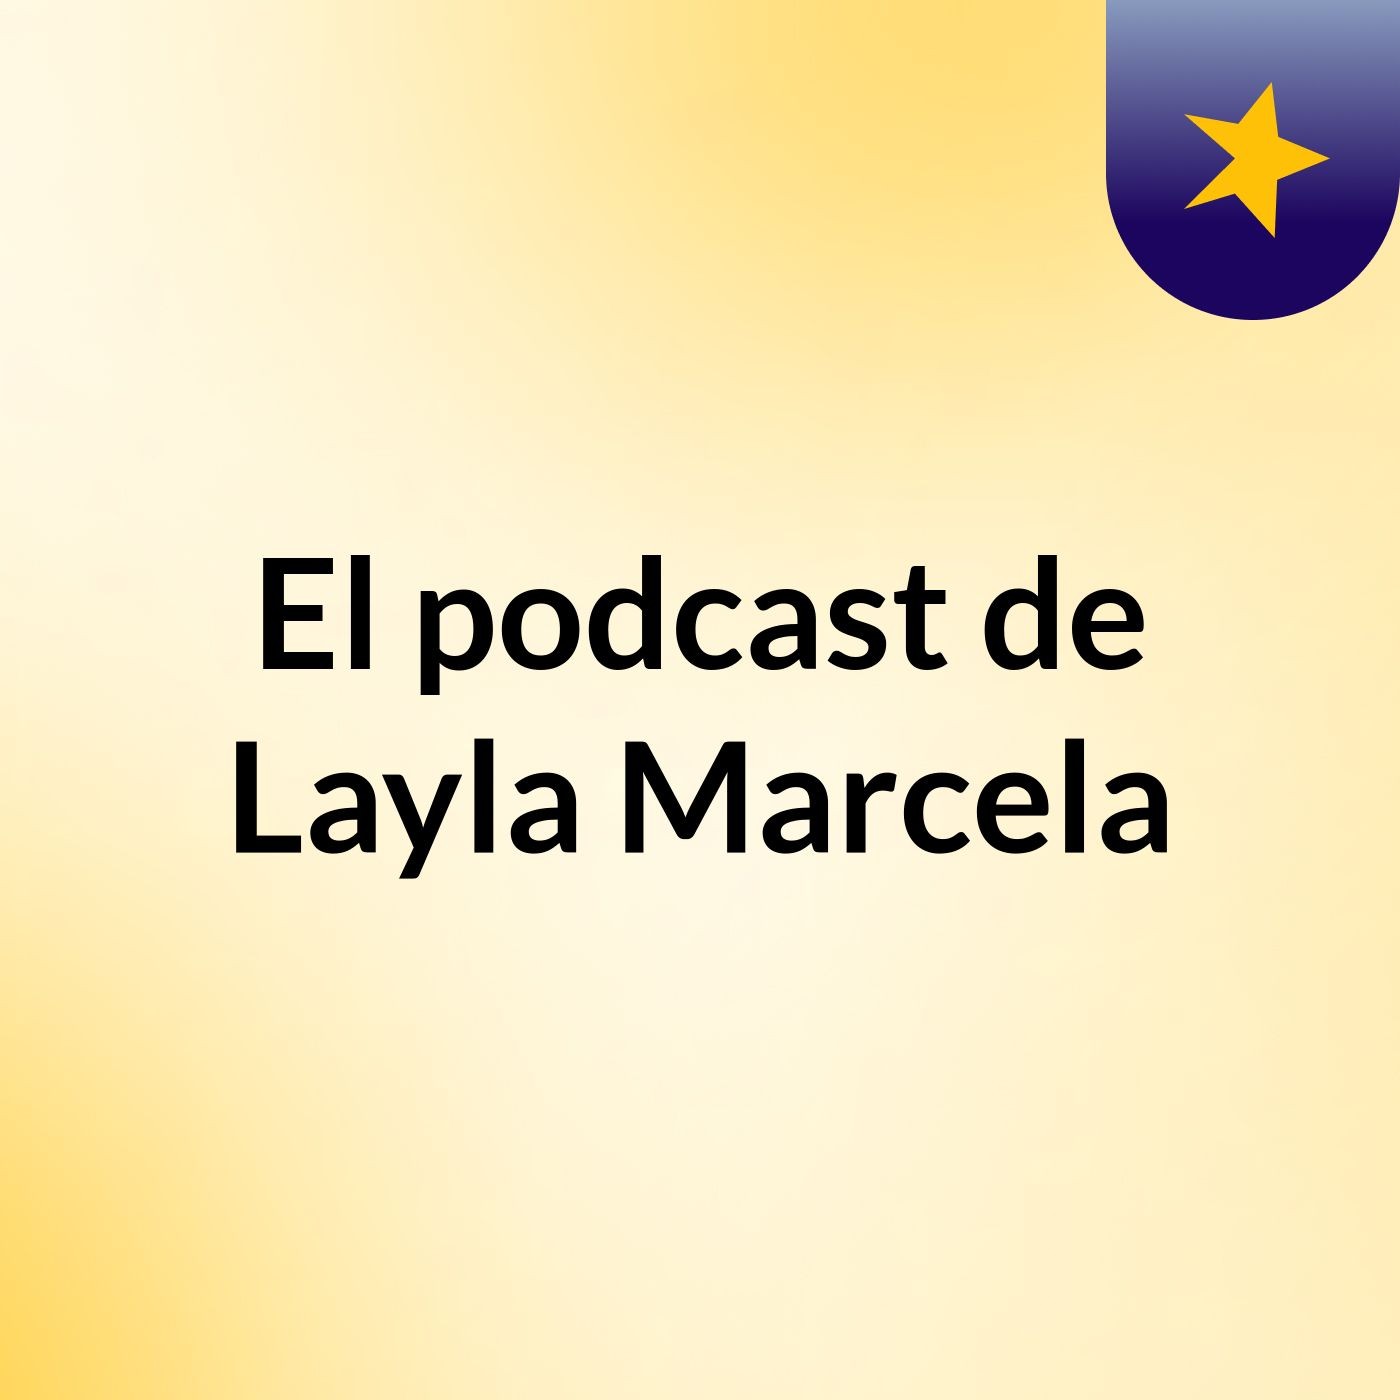 El podcast de Layla Marcela